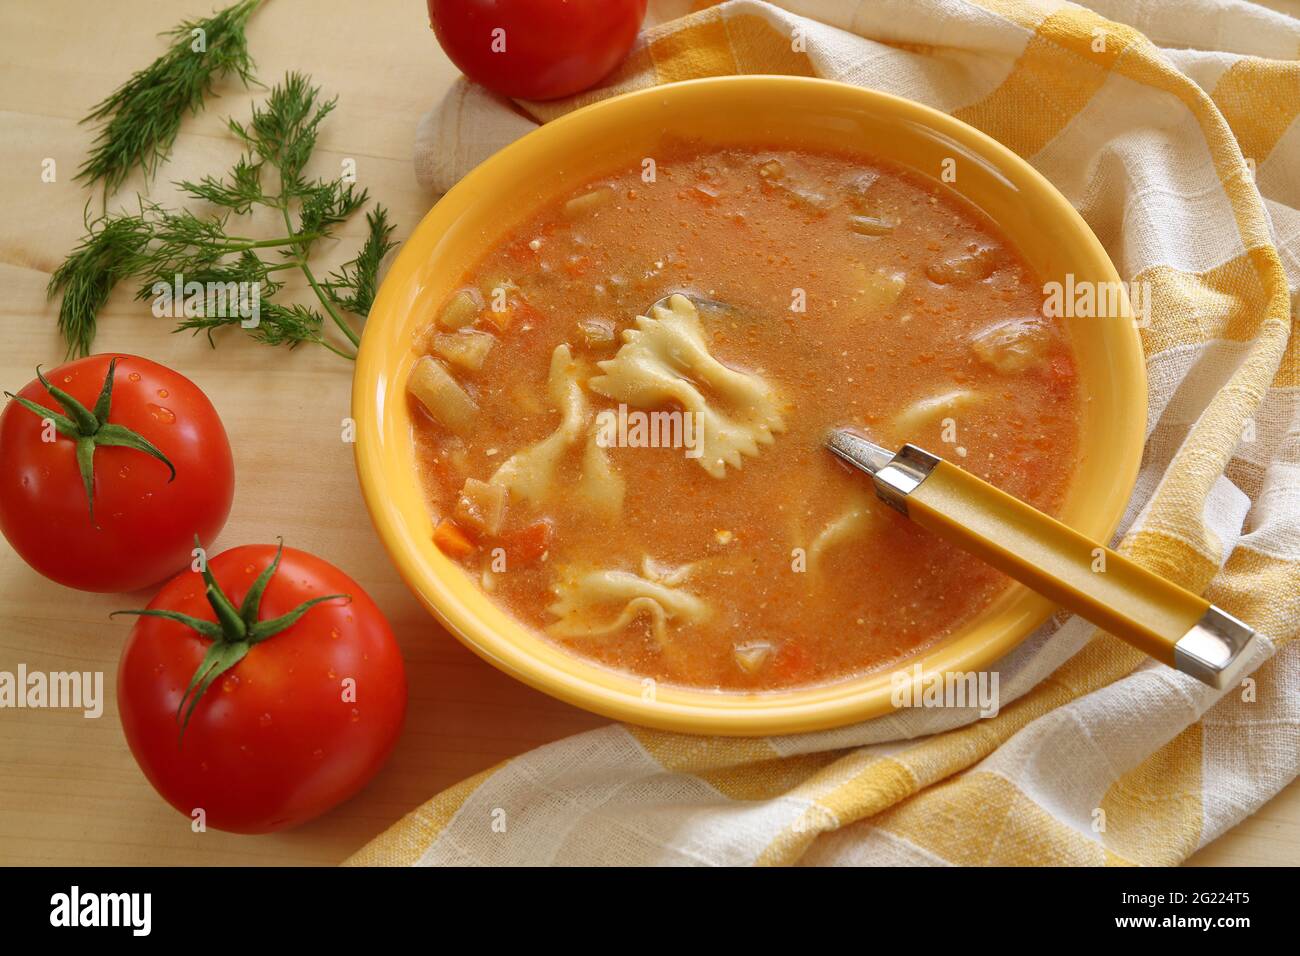 Tradizionale zuppa di pomodoro fatta in casa in ciotola gialla, con nuddles e cucchiaio, tre pomodori rossi maturi, erbe verdi, biancheria da cucina. Foto Stock